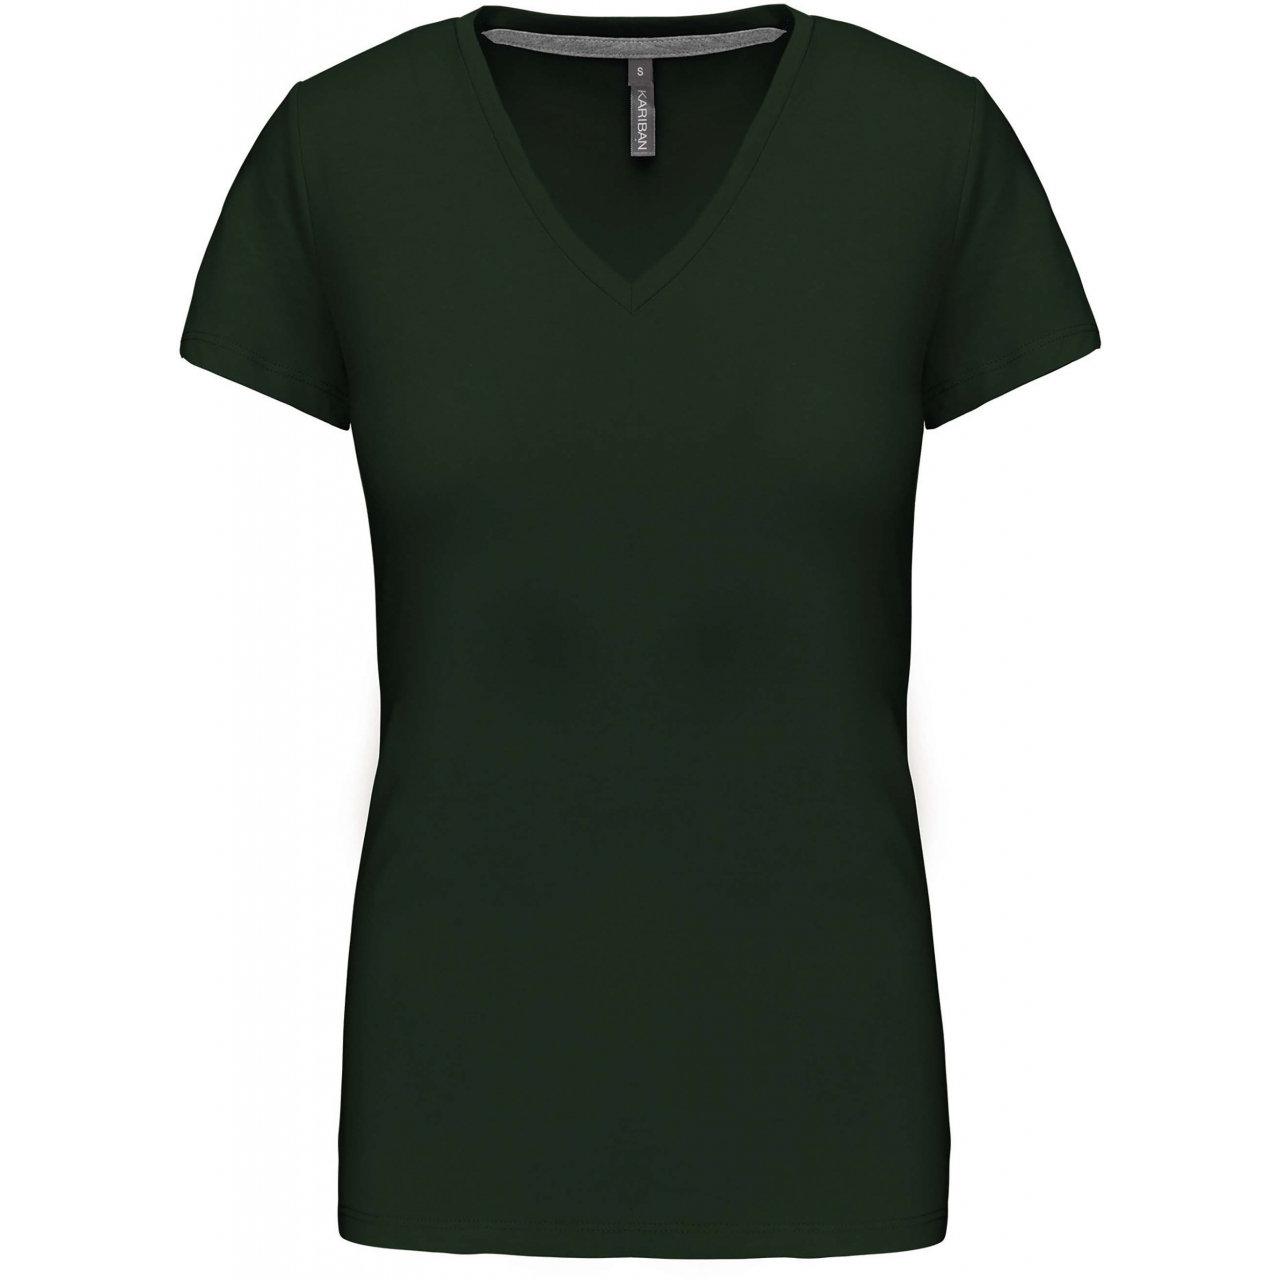 Dámské tričko Kariban V-neck s krátkým rukávem - tmavě zelené, XL